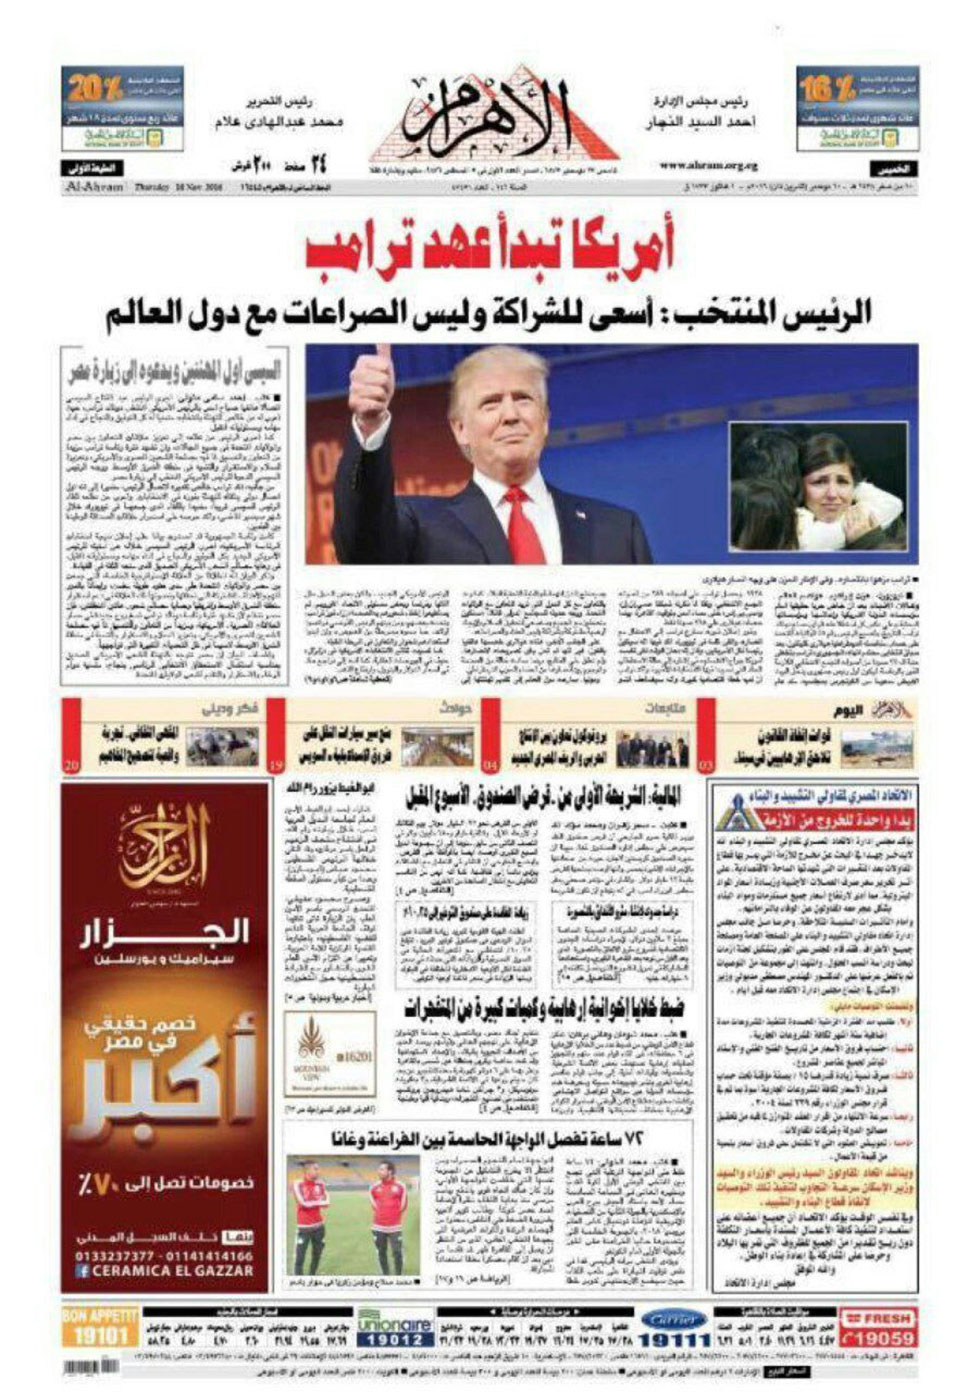 בעיתון "אל-אהראם" הממסדי המצרי ציטטו את טראמפ אומר: "אני שואף לשותפות ולא לסכסוכים ברחבי העולם" ()